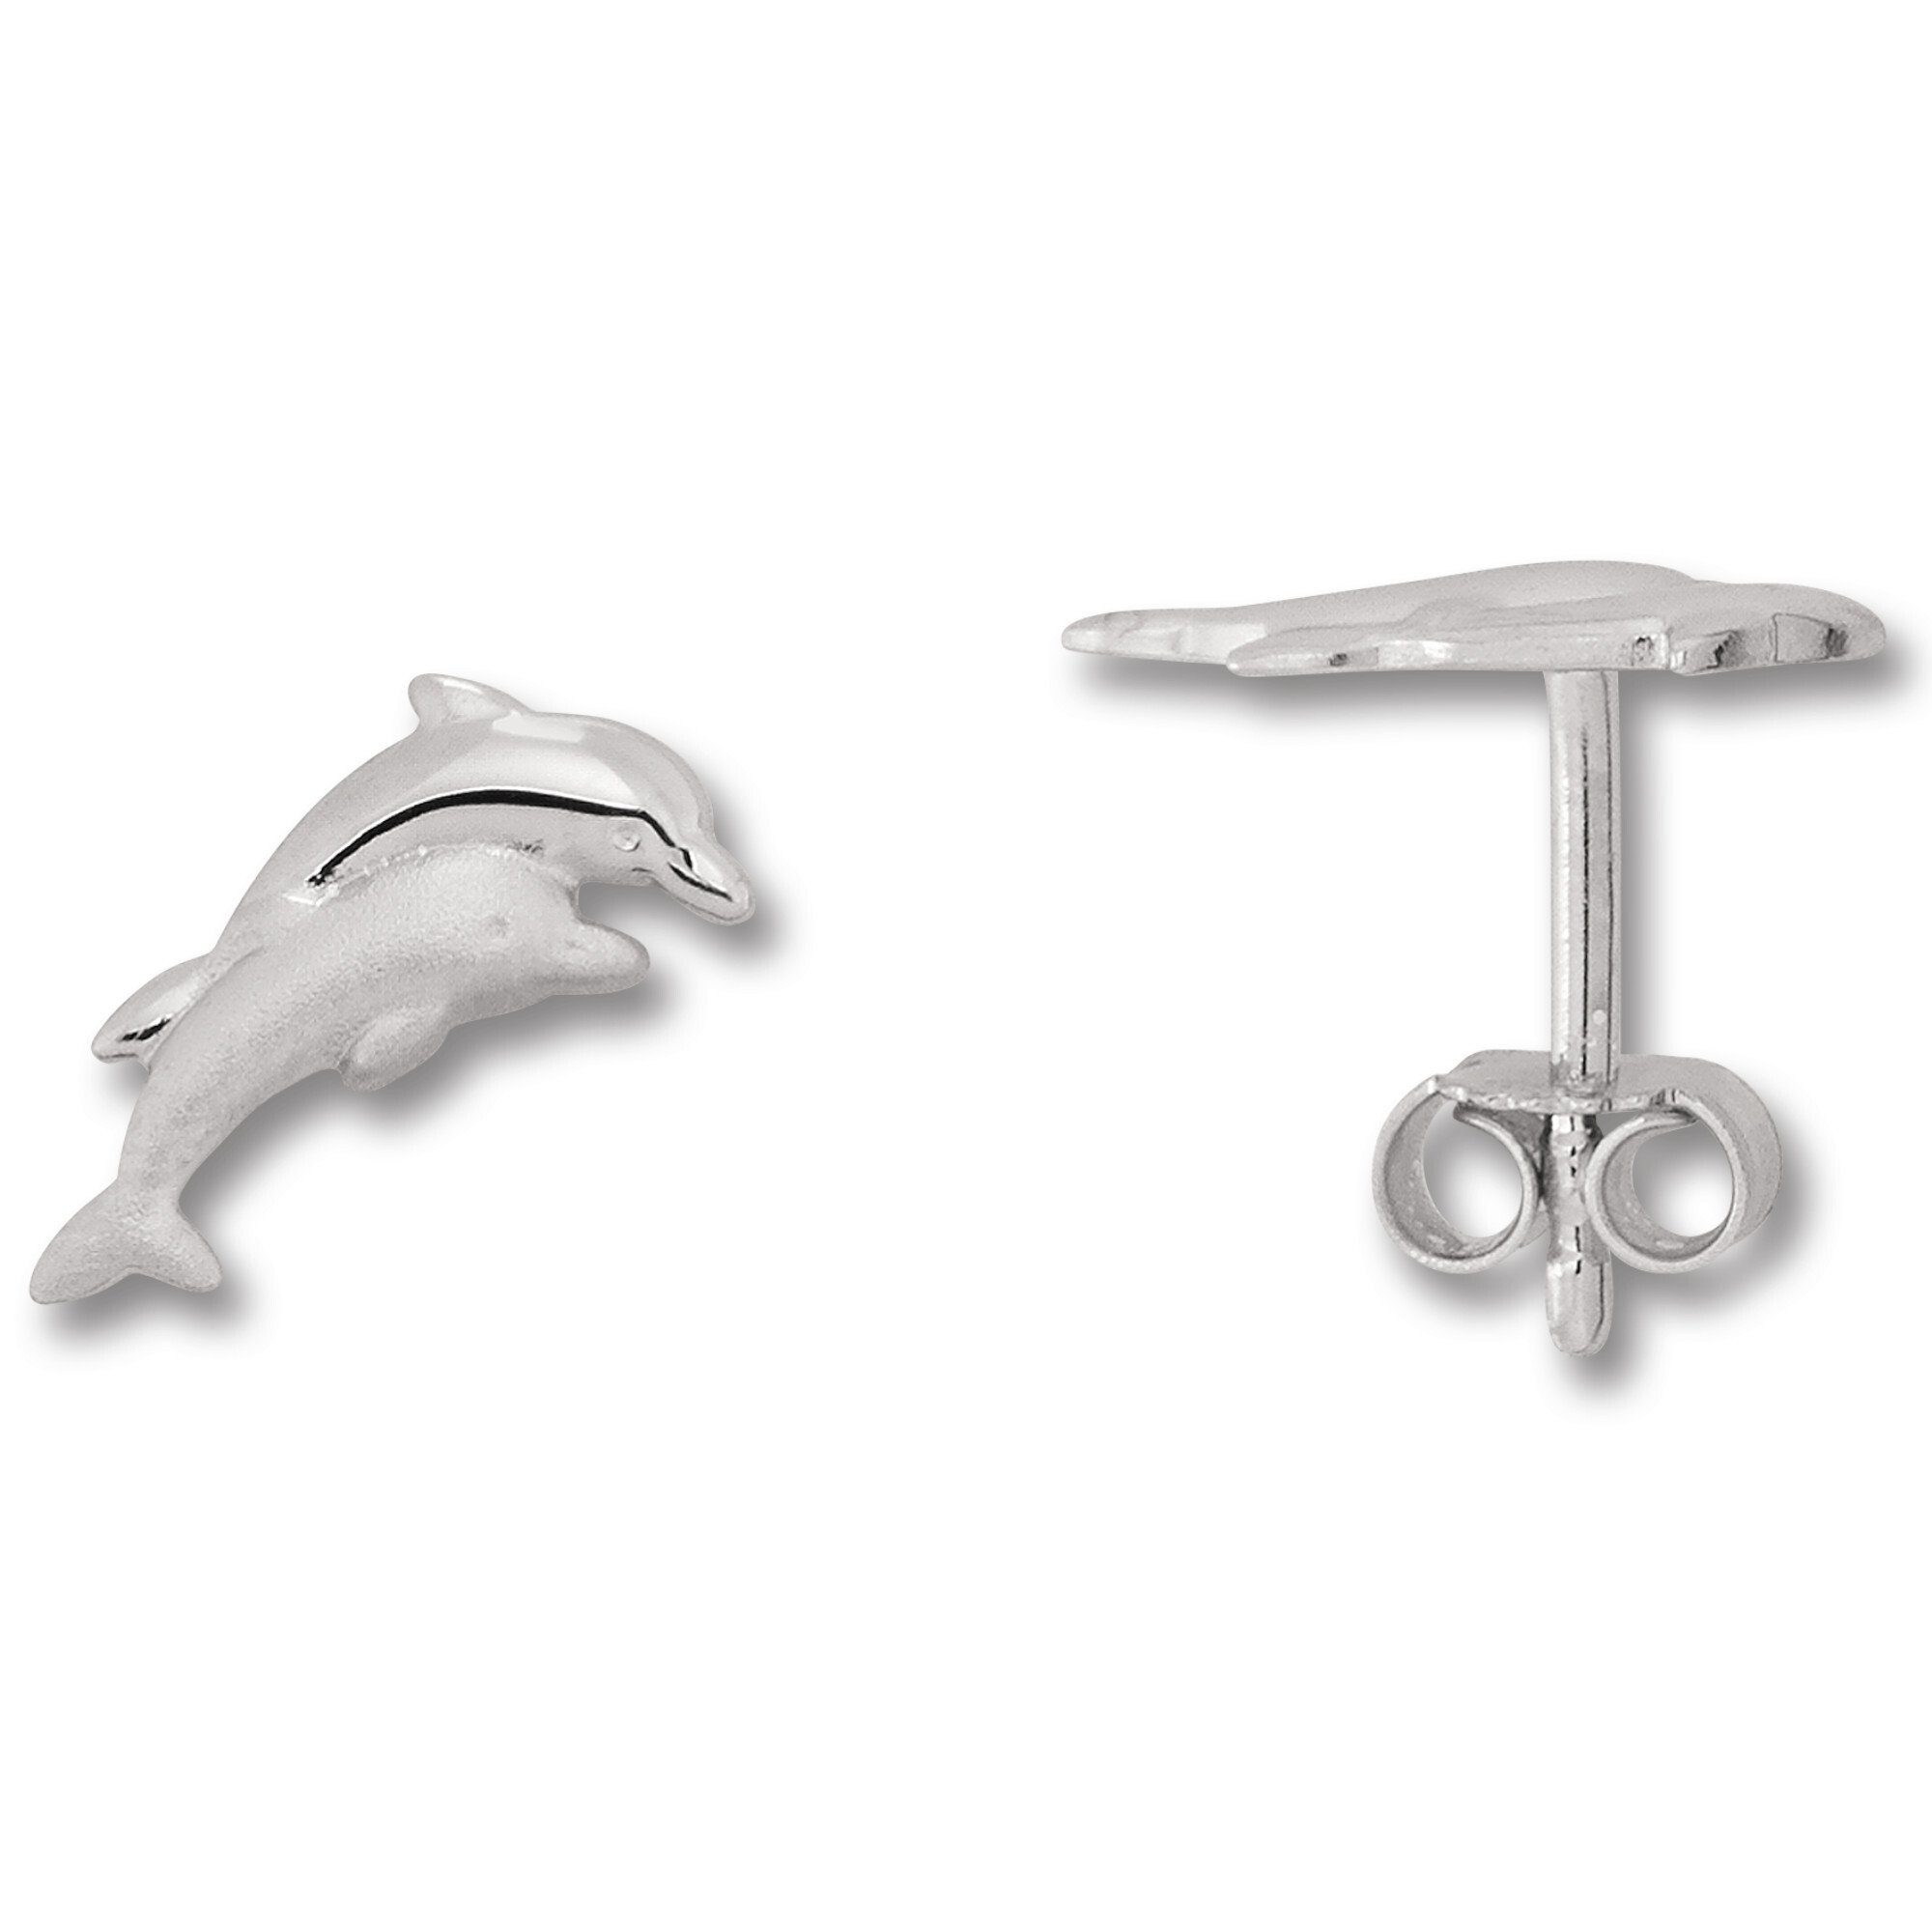 ONE ELEMENT Paar Ohrstecker Delfin Damen Ohrringe aus Ohrstecker Silber Silber, Delfin Schmuck 925